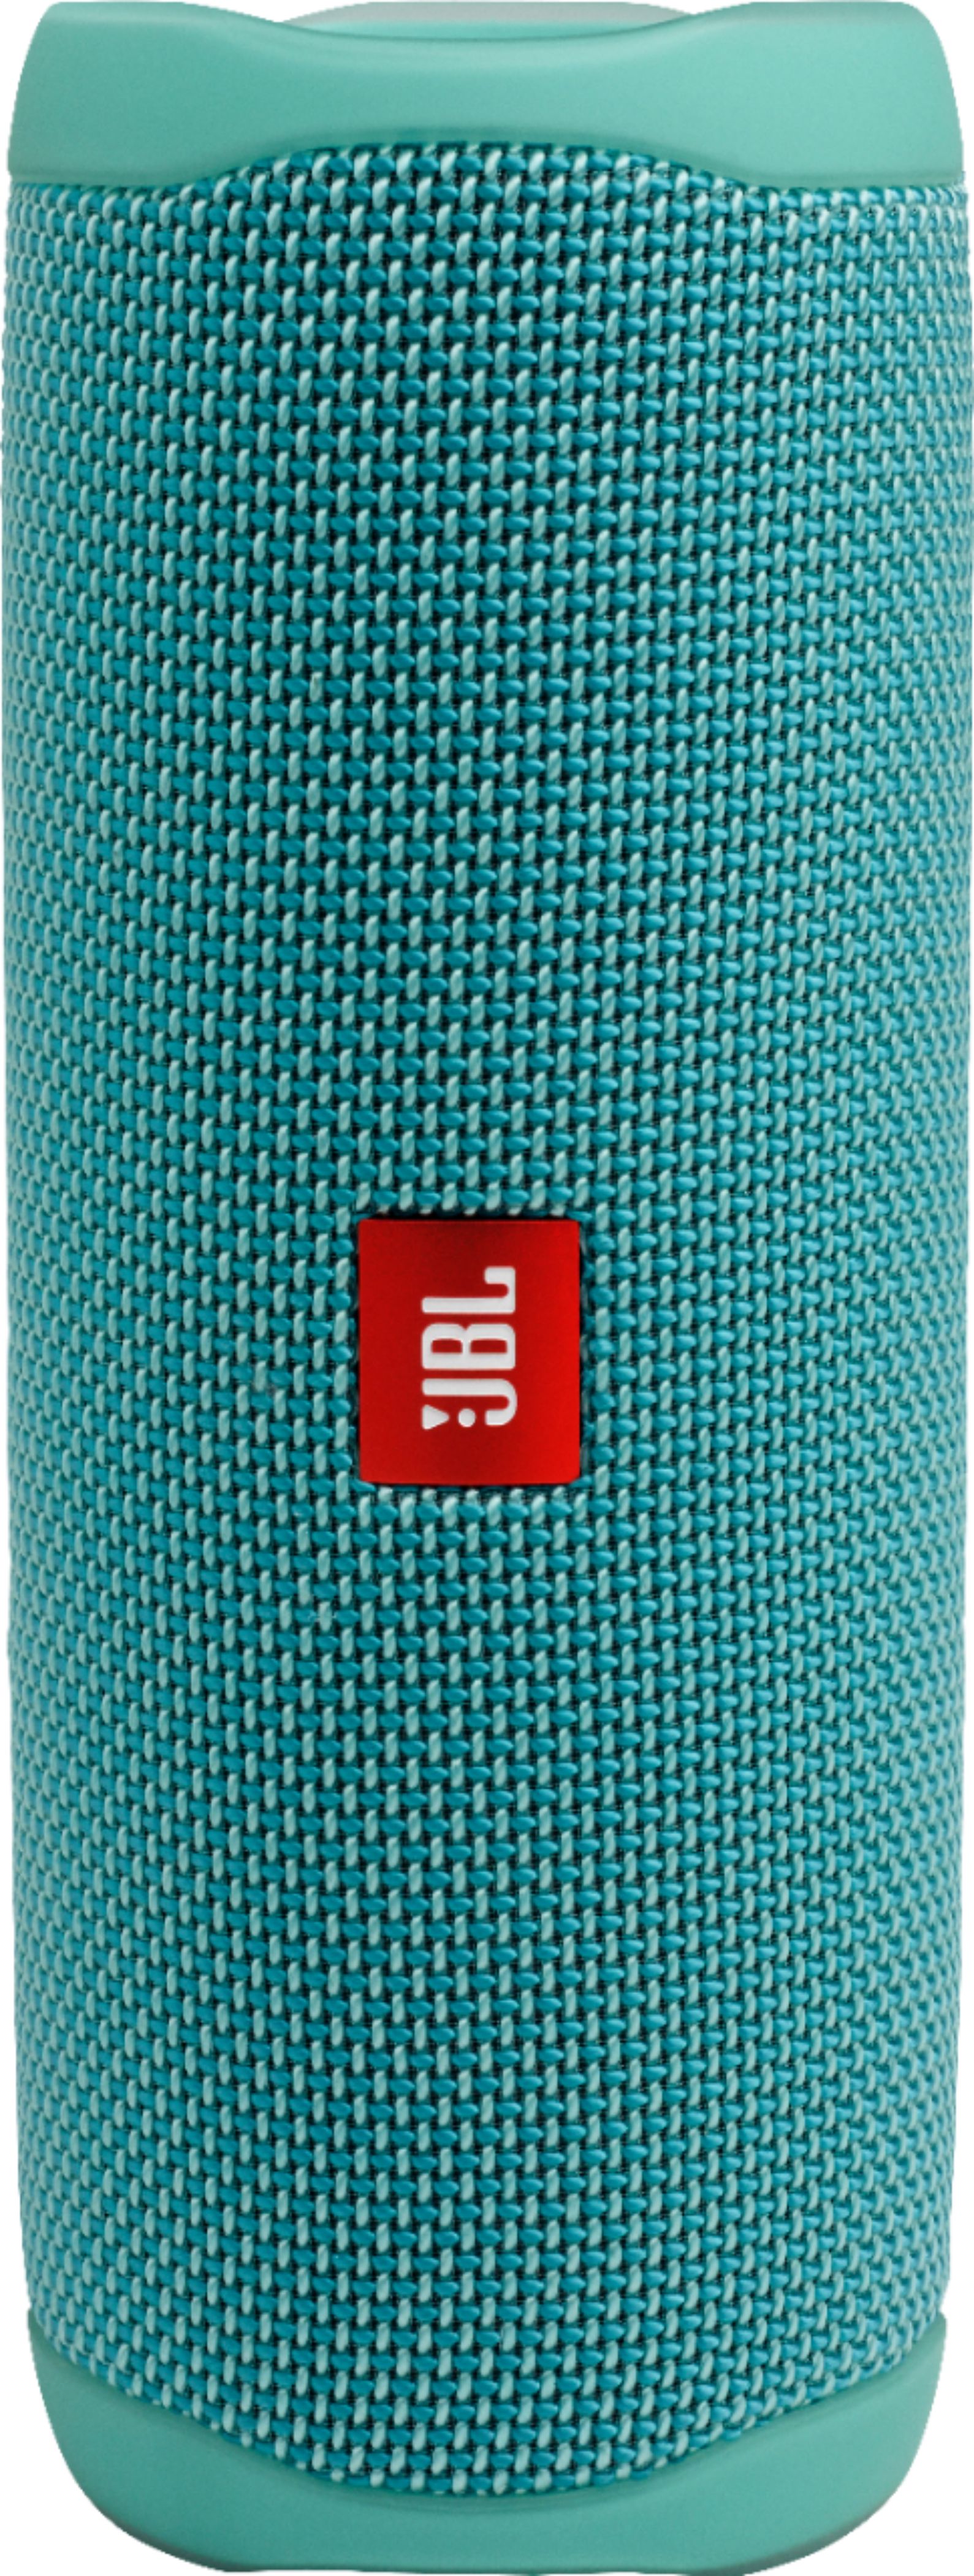 JBL Flip 5 Portable Bluetooth Speaker Desert Sand JBLFLIP5SANDAM - Best Buy